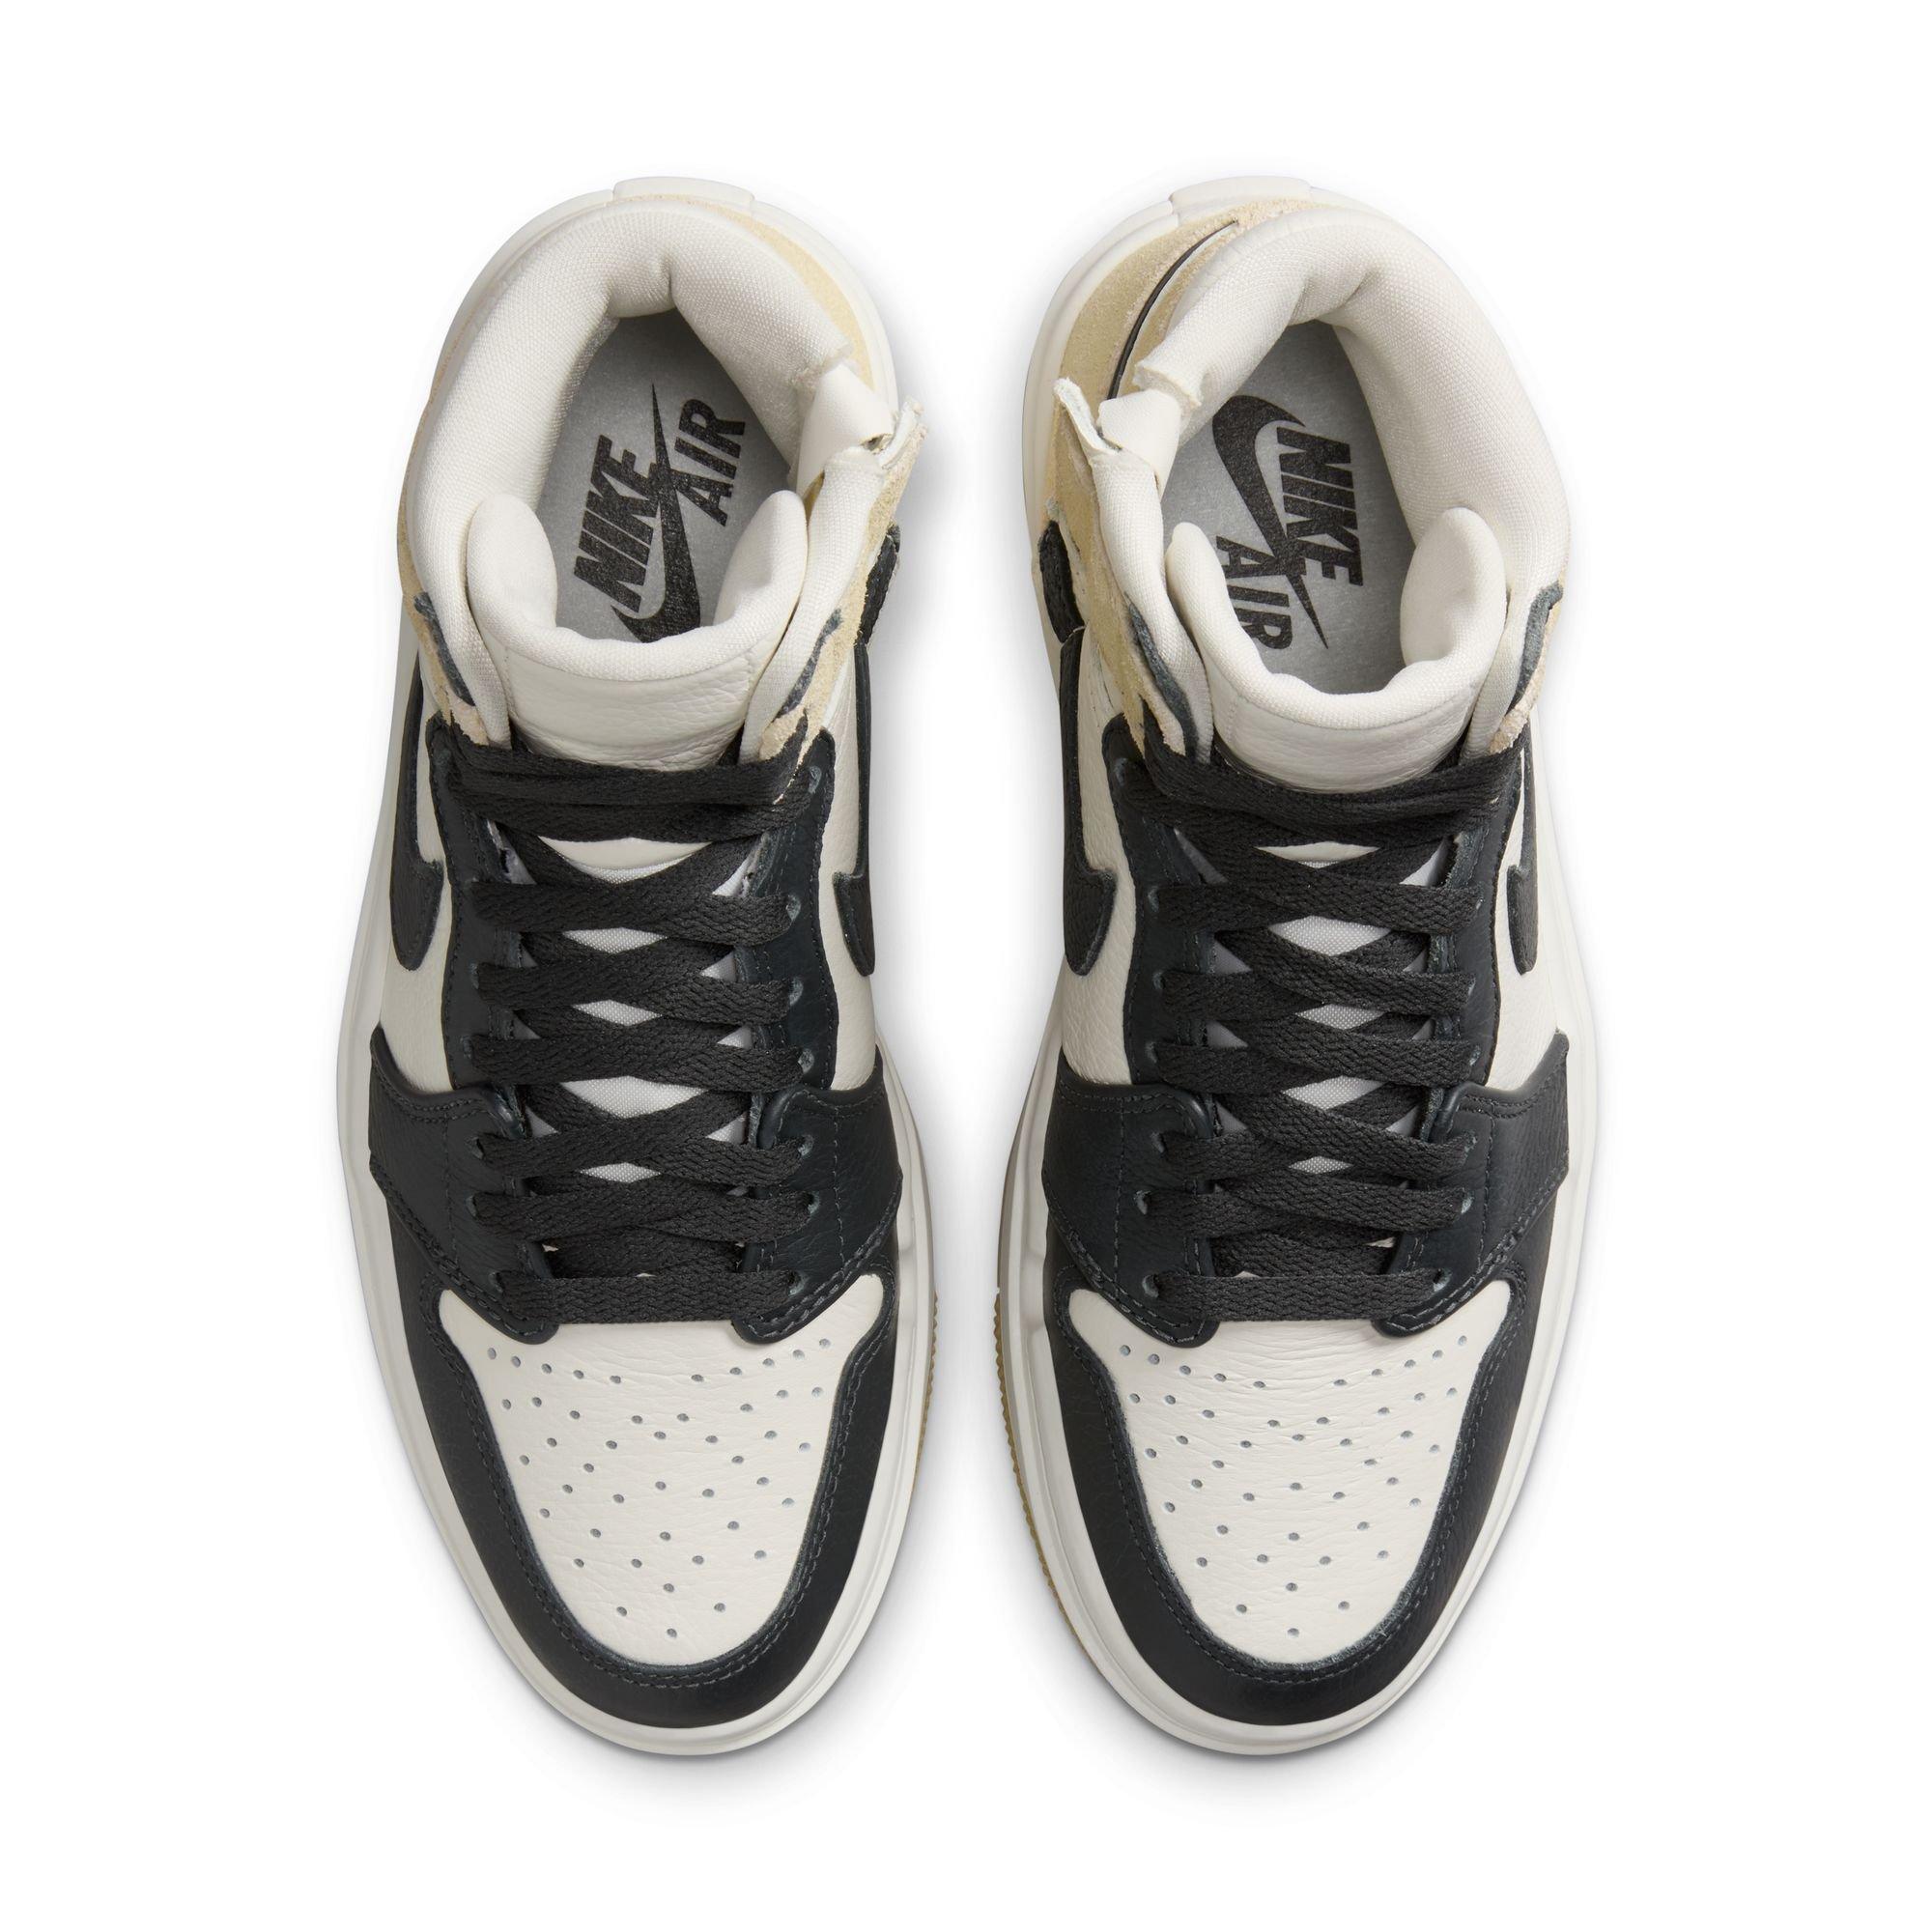 Nike Air Jordan 1 Elevate Mid Sneakers in Black and White-Multi